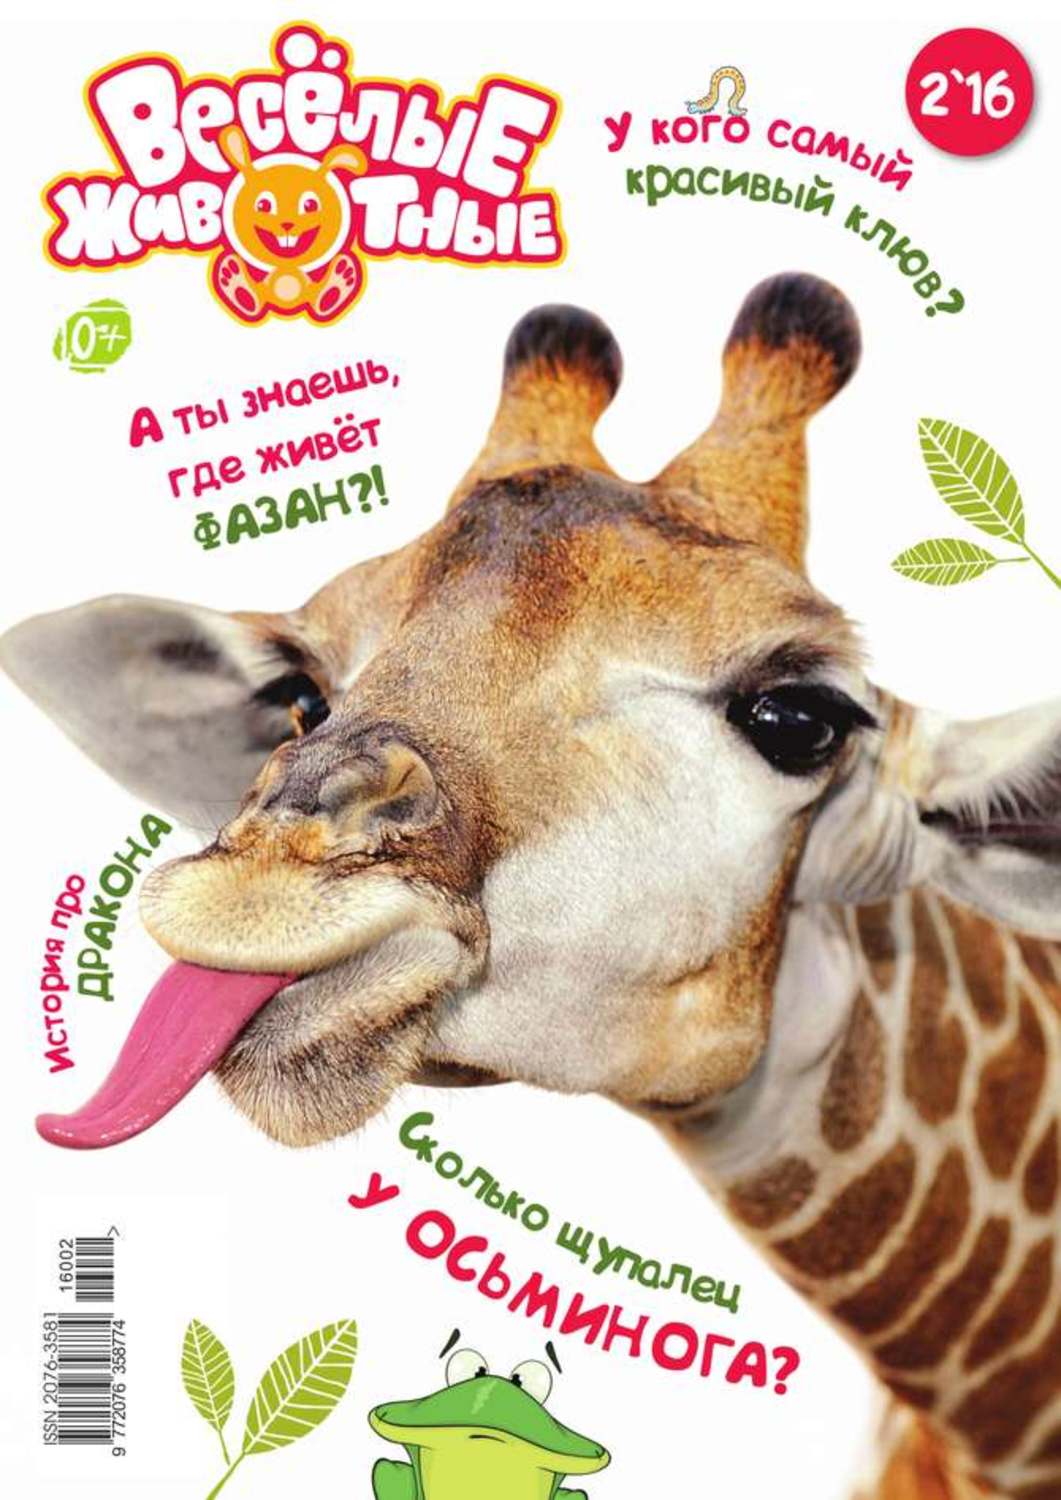 Обложка журнала в мире животных